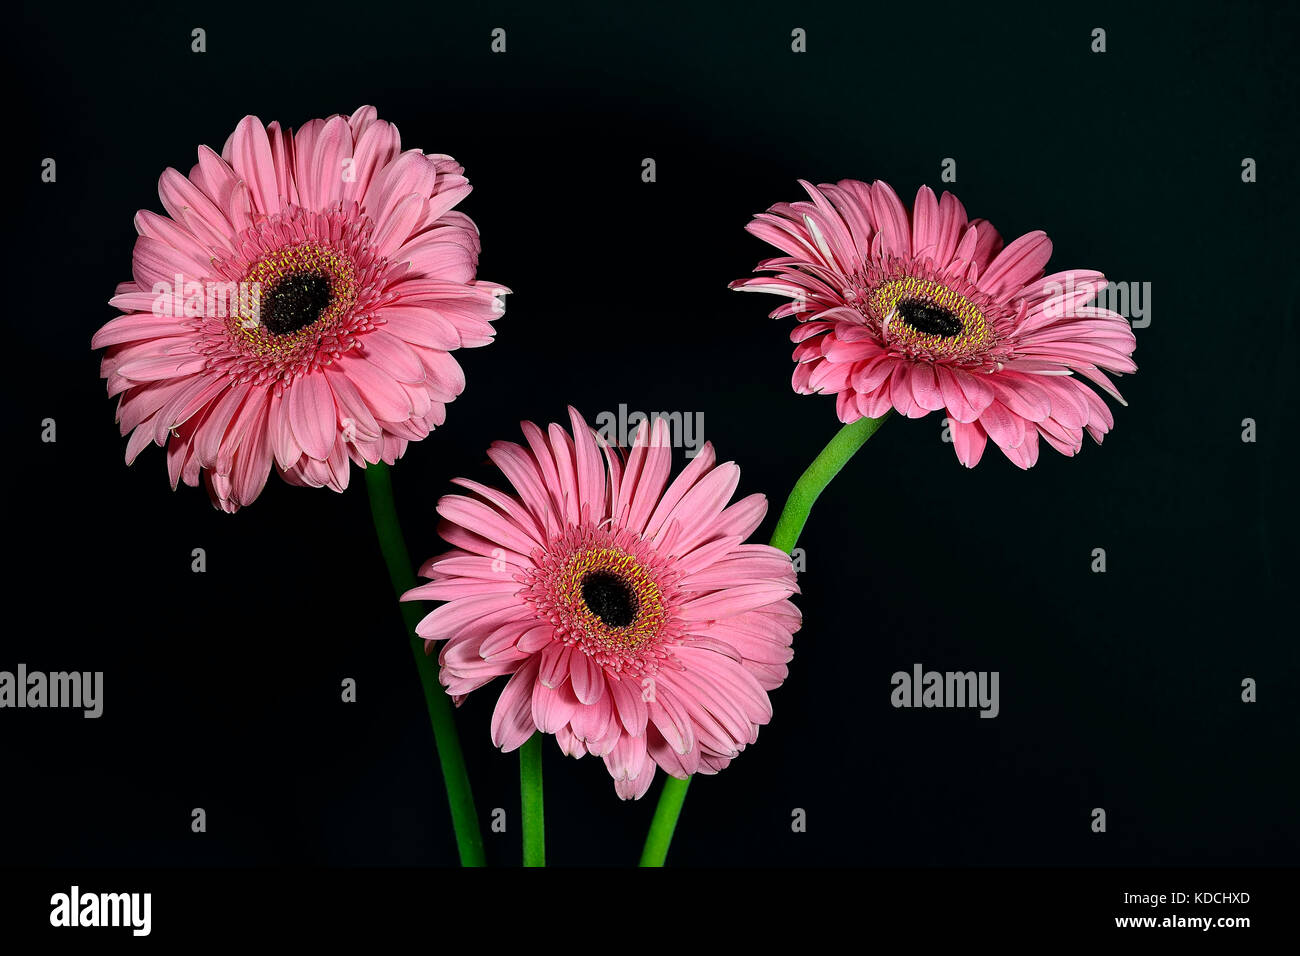 Drei Rosa Gerbera Blumen close-up auf dem schwarzen Hintergrund Stockfoto